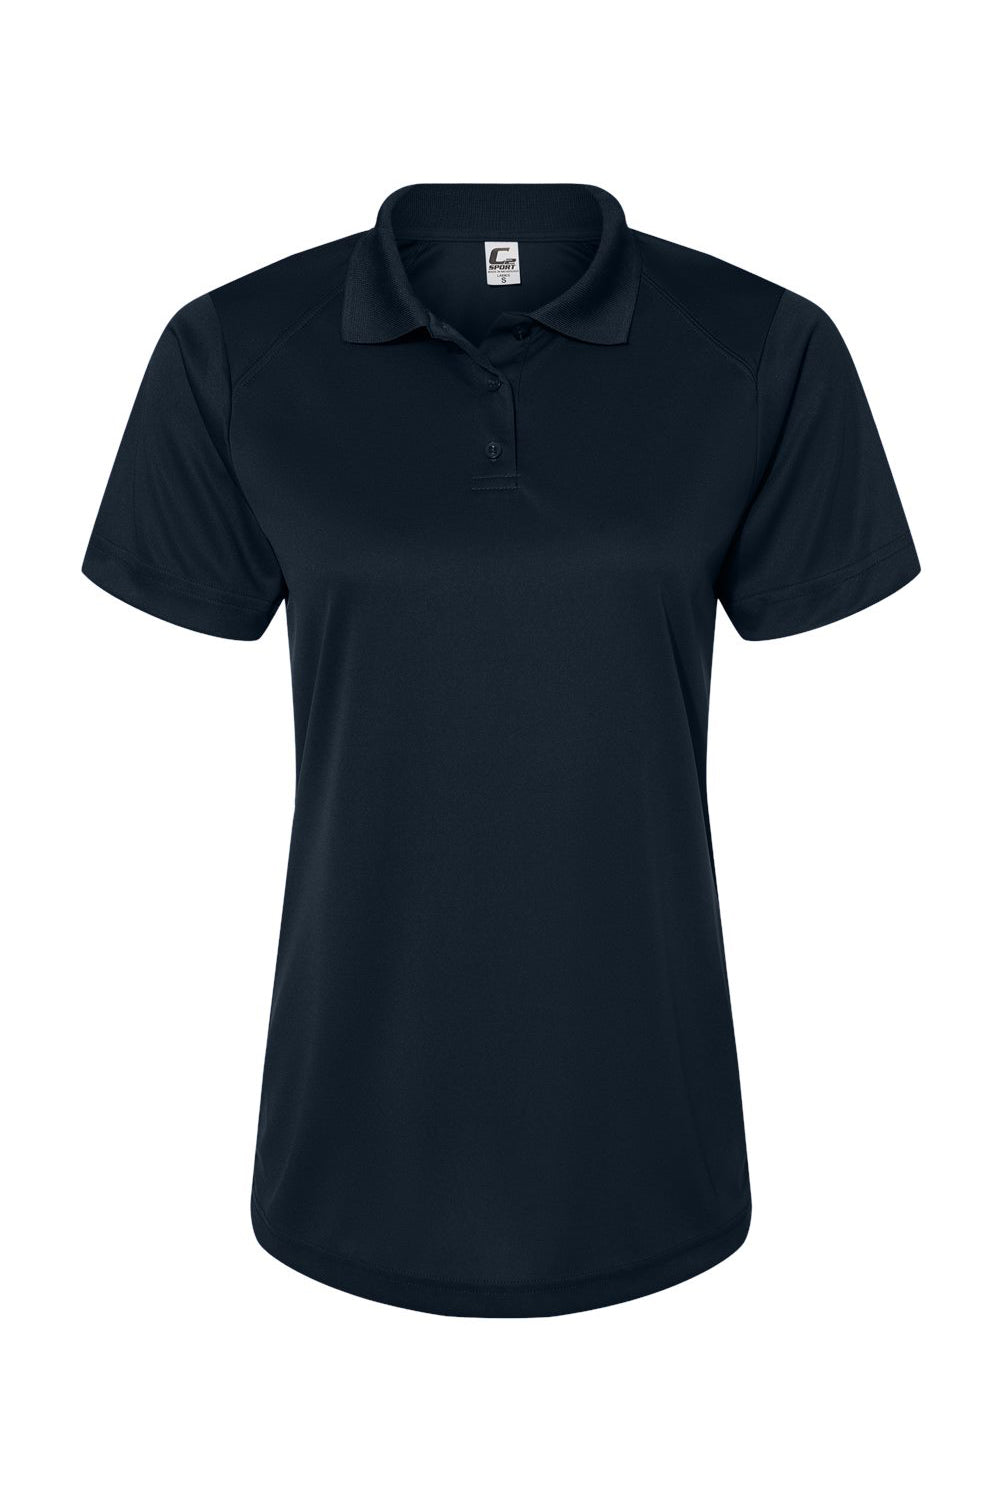 C2 Sport 5902 Womens Moisture Wicking Short Sleeve Polo Shirt Navy Blue Flat Front